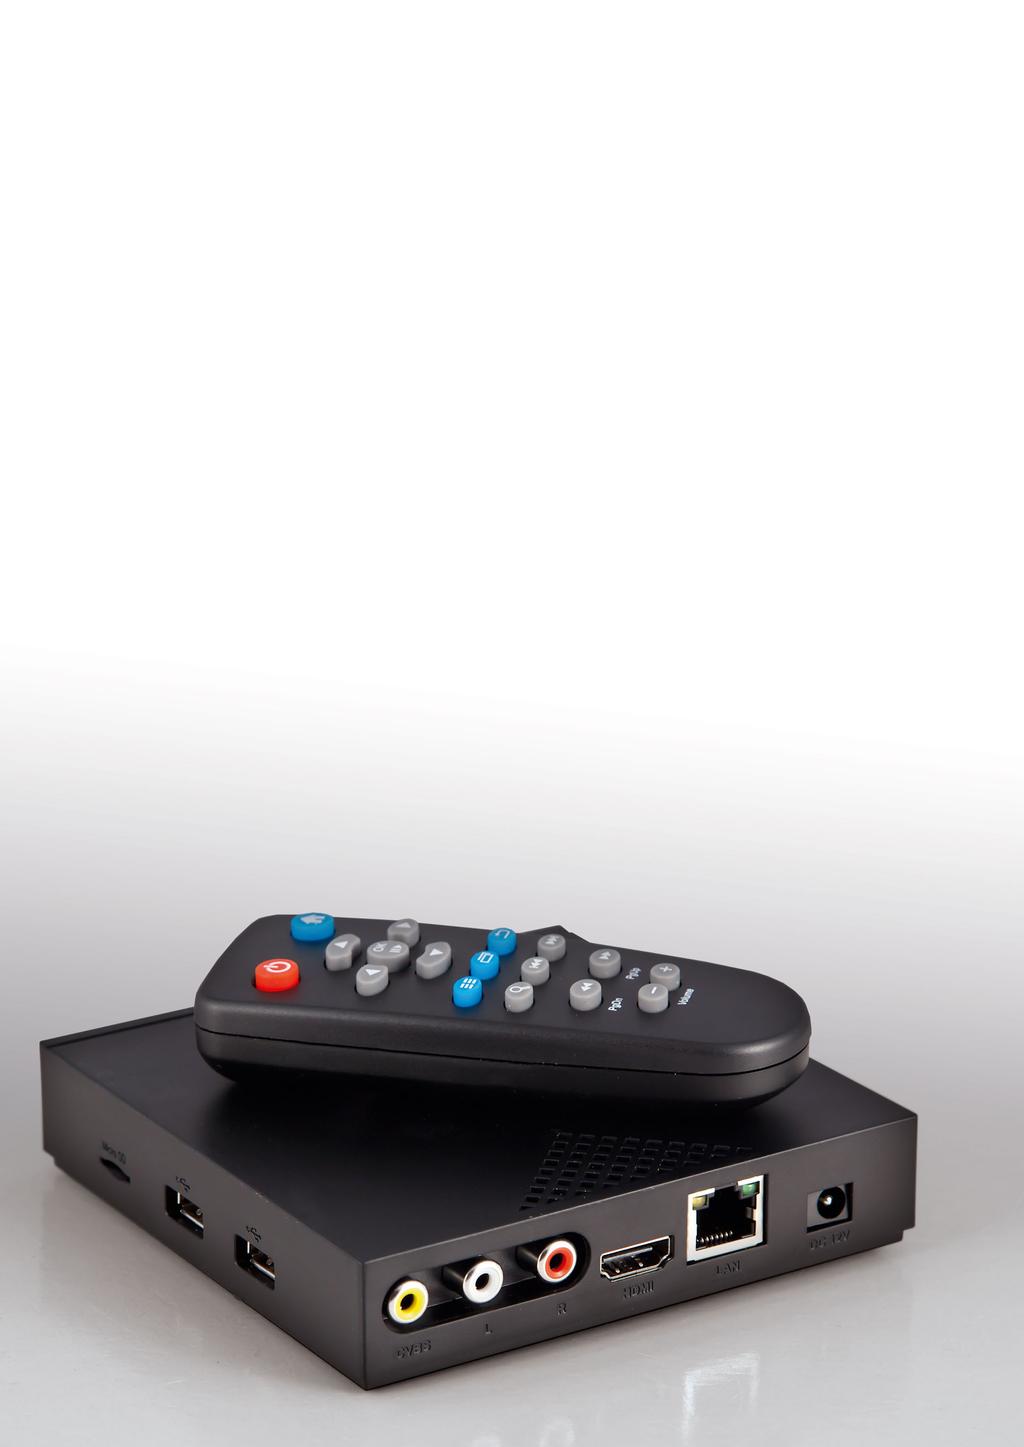 TEST REPORT Web TV Multimedia-Box mit Android Kombination von Web TV und Media-Box Die OTT Android TV Box IV3118 von Panodic ist eine besonders gelungene Kombination von Multimedia- und Web TV Box.